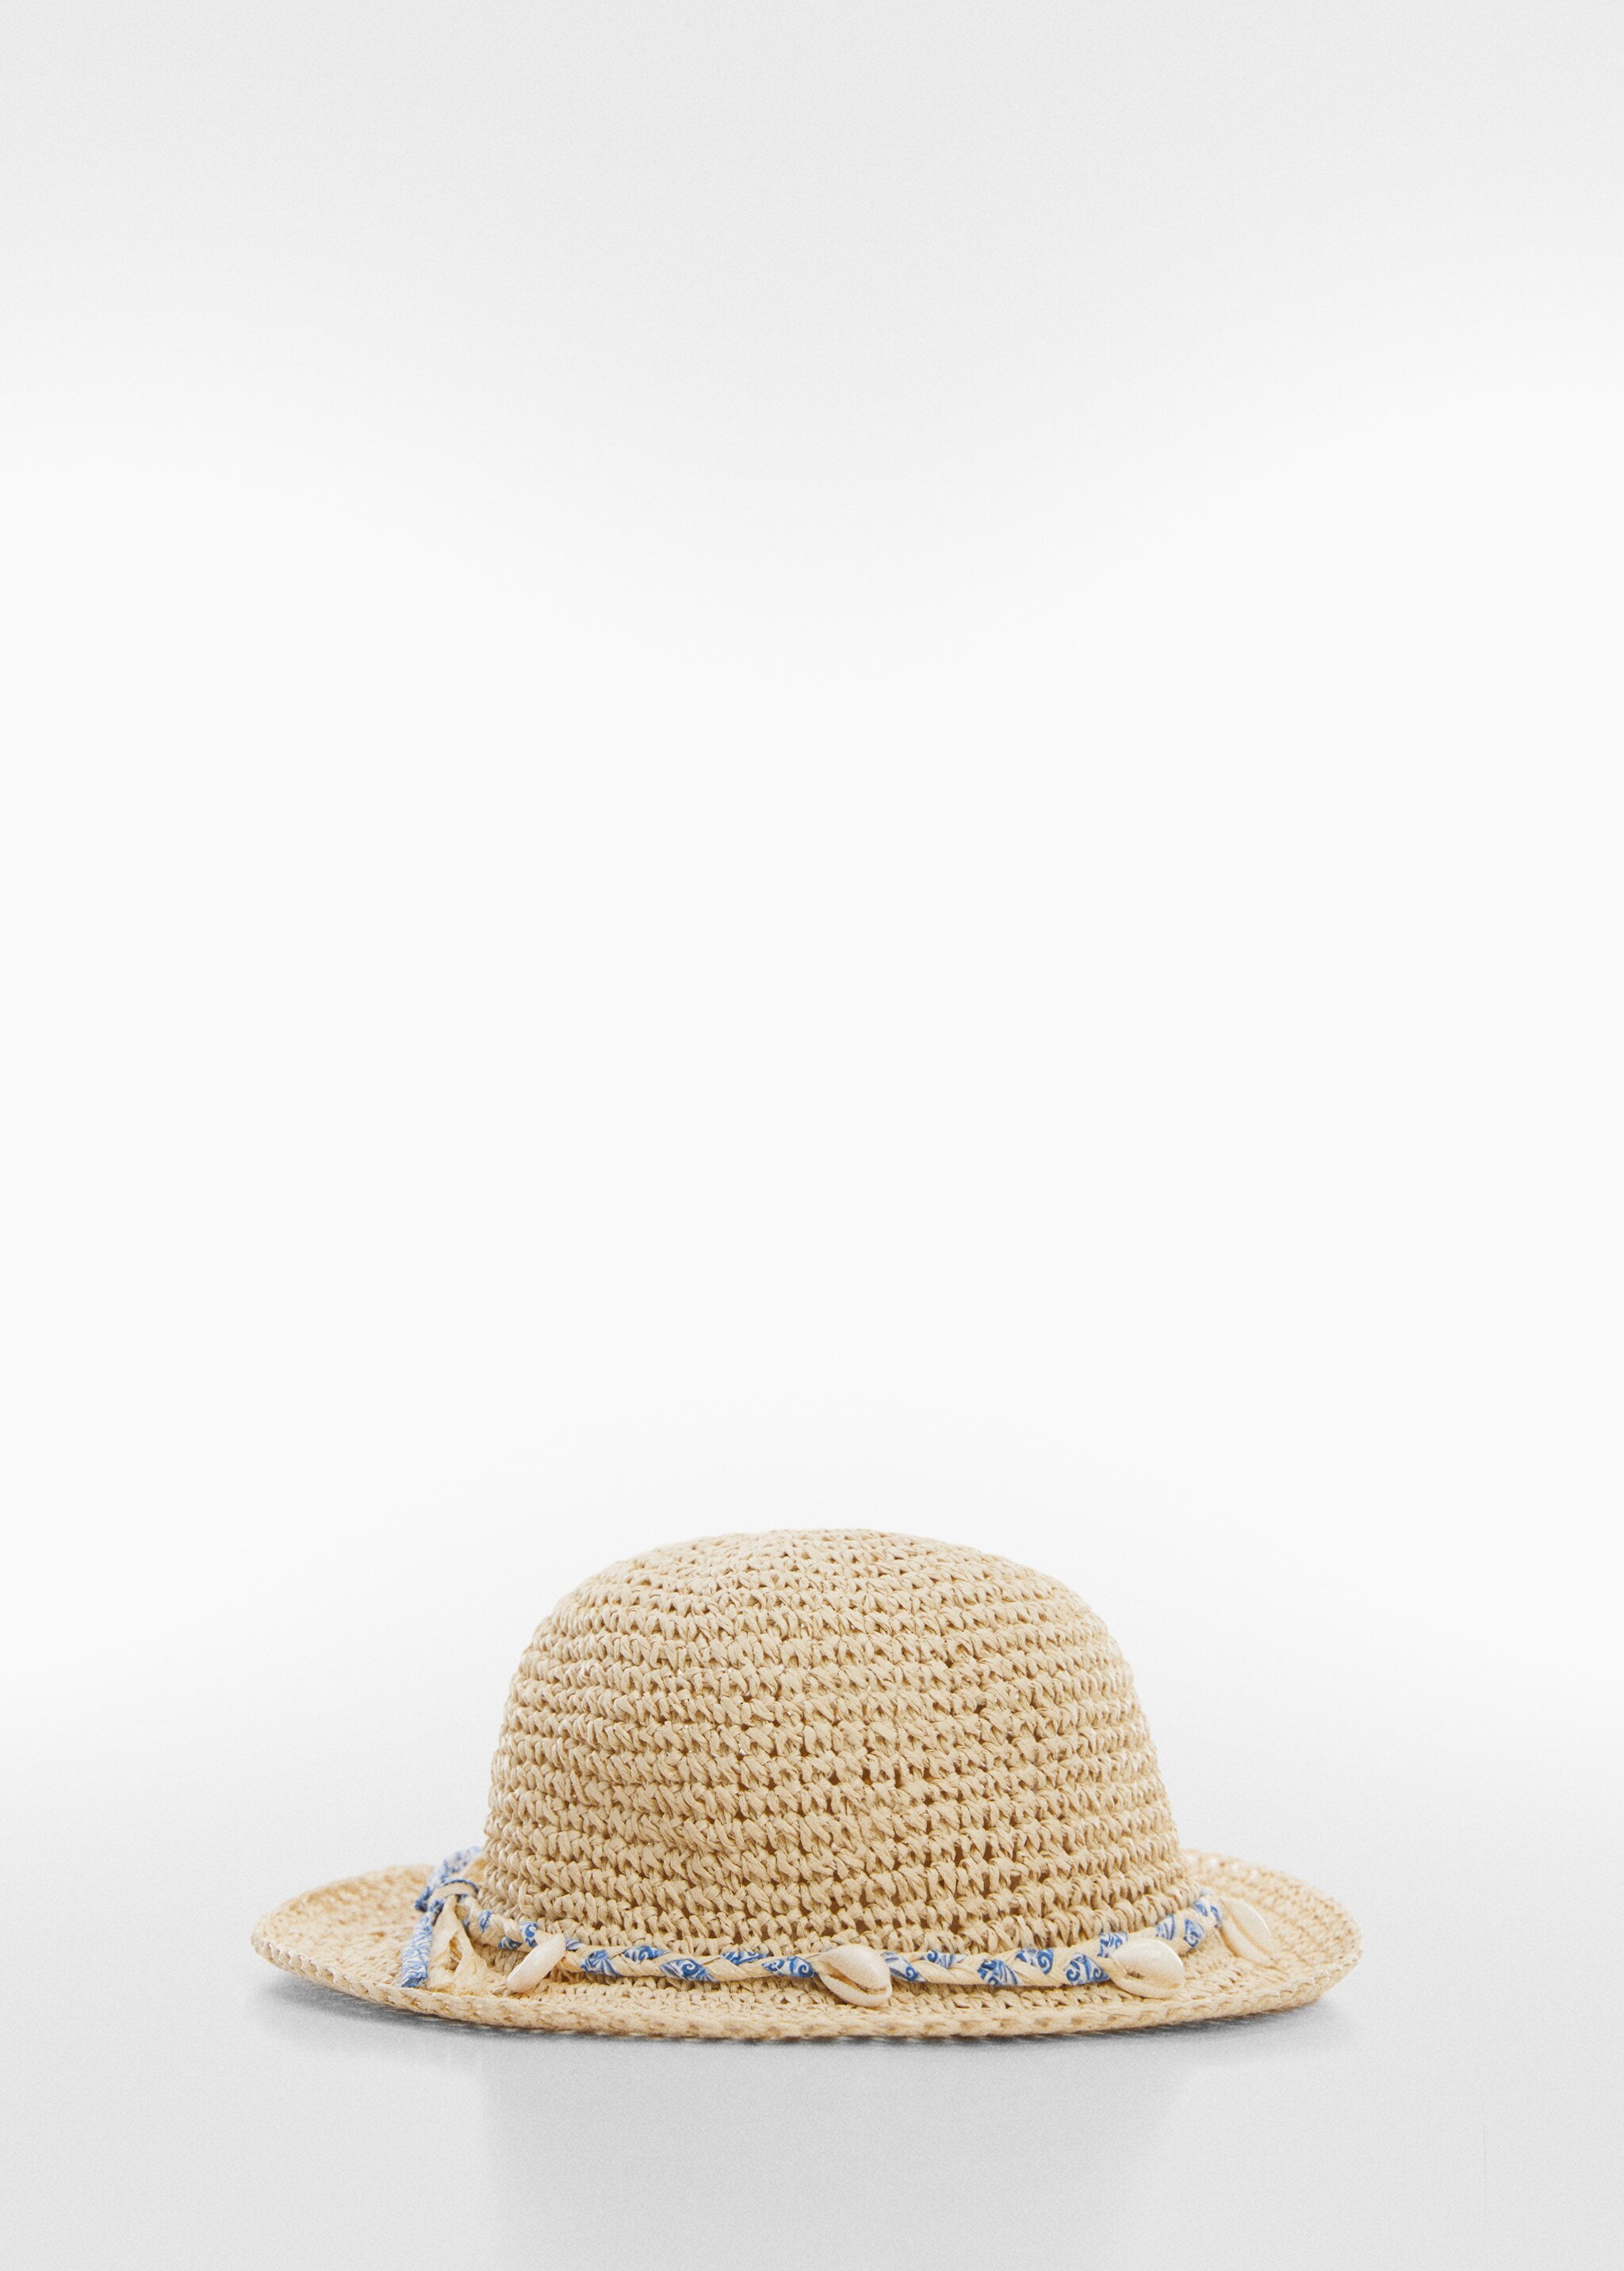 Chapéu de palha com conchas - Artigo sem modelo